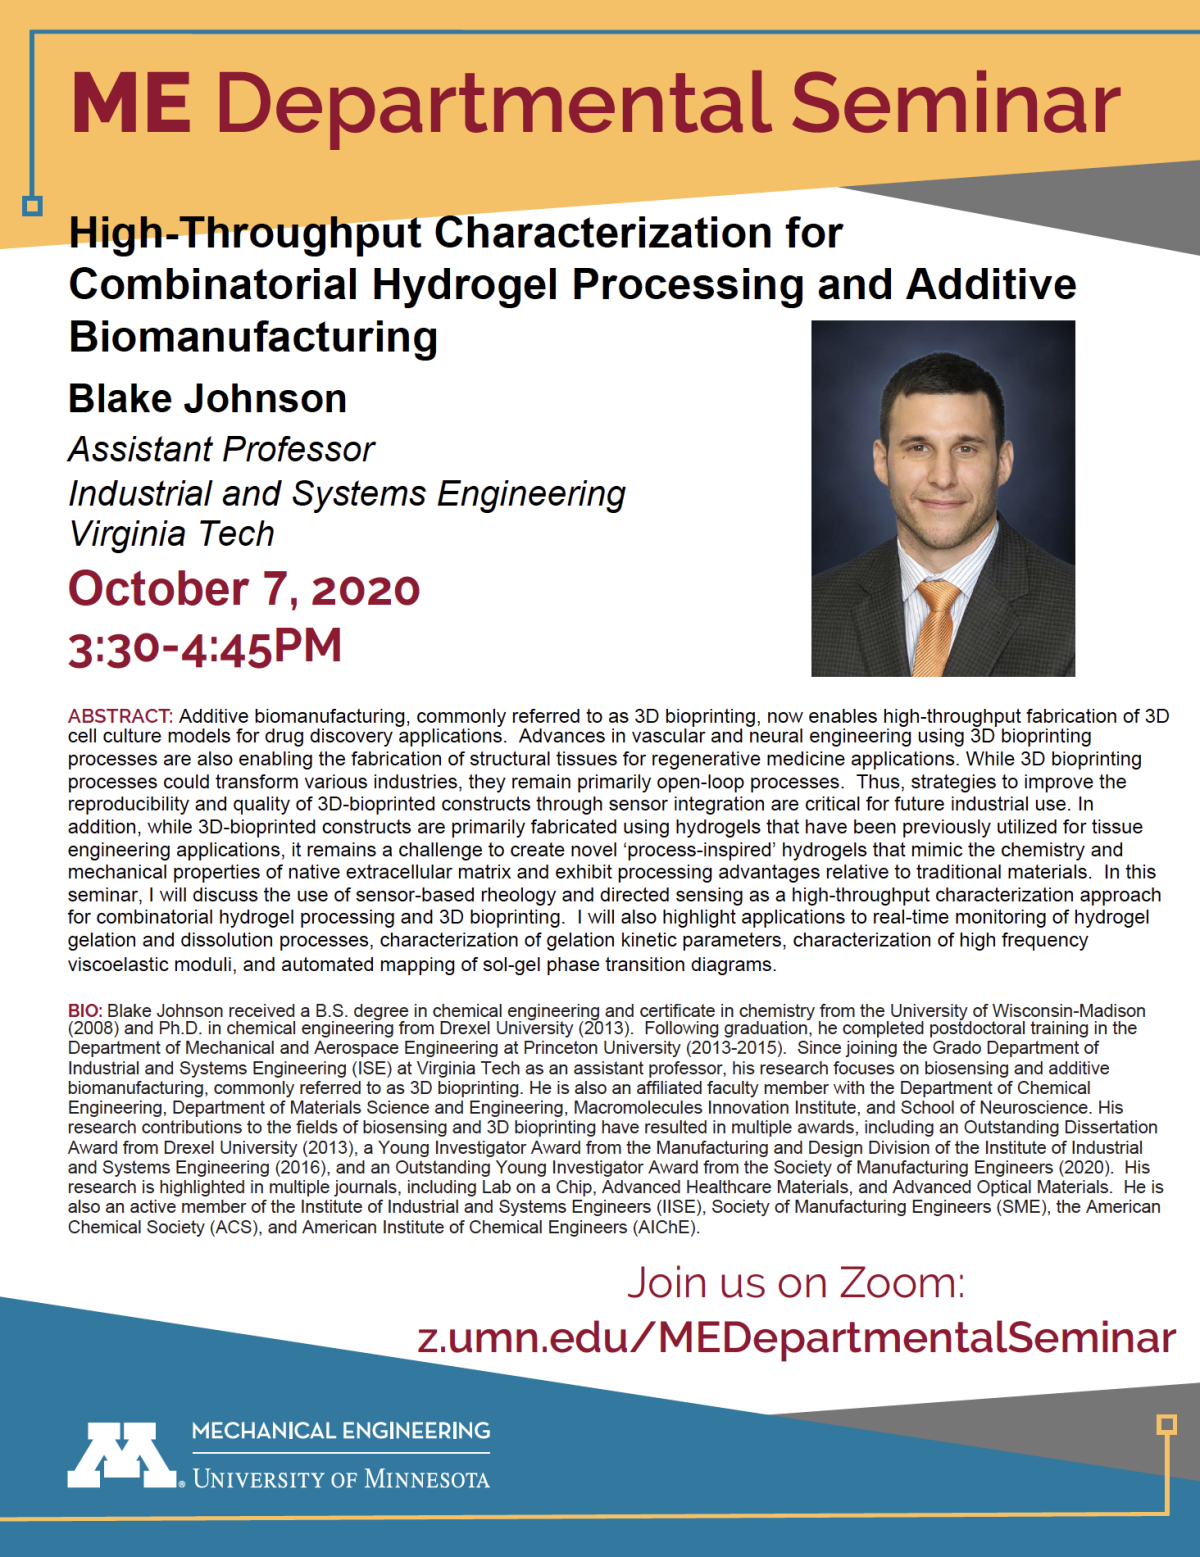 Blake Johnson Departmental Seminar flyer